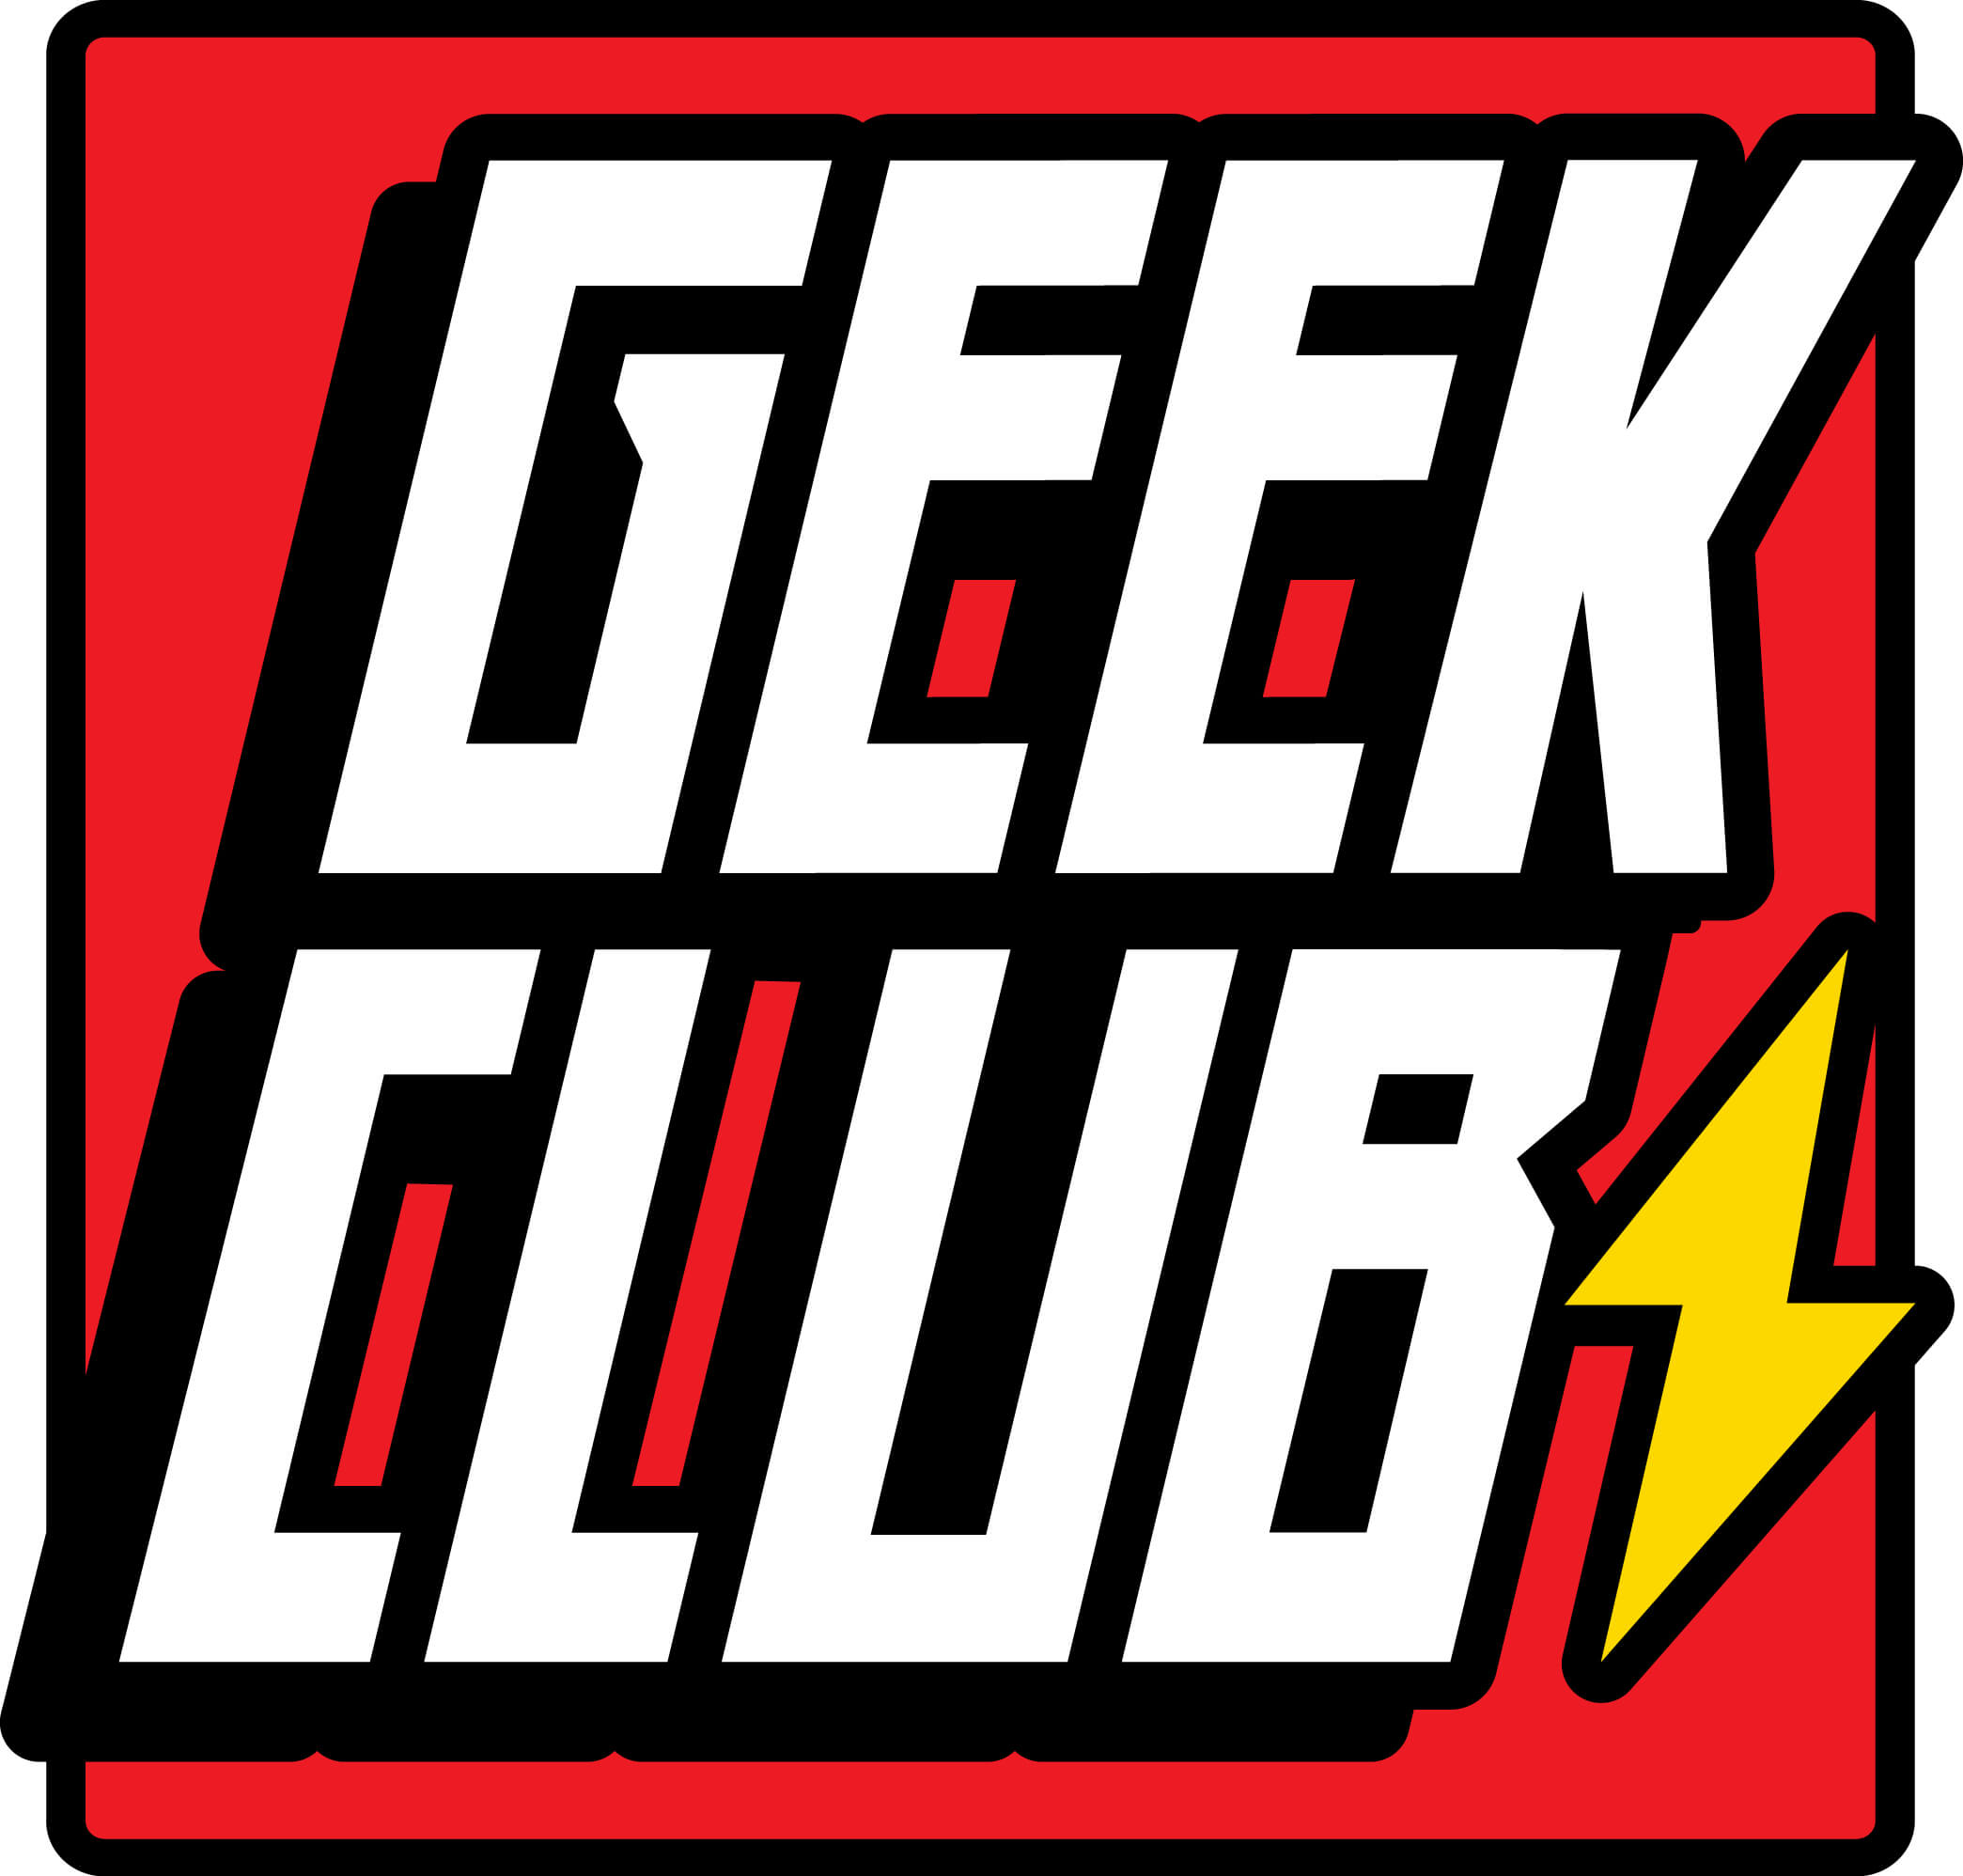 GeekClub